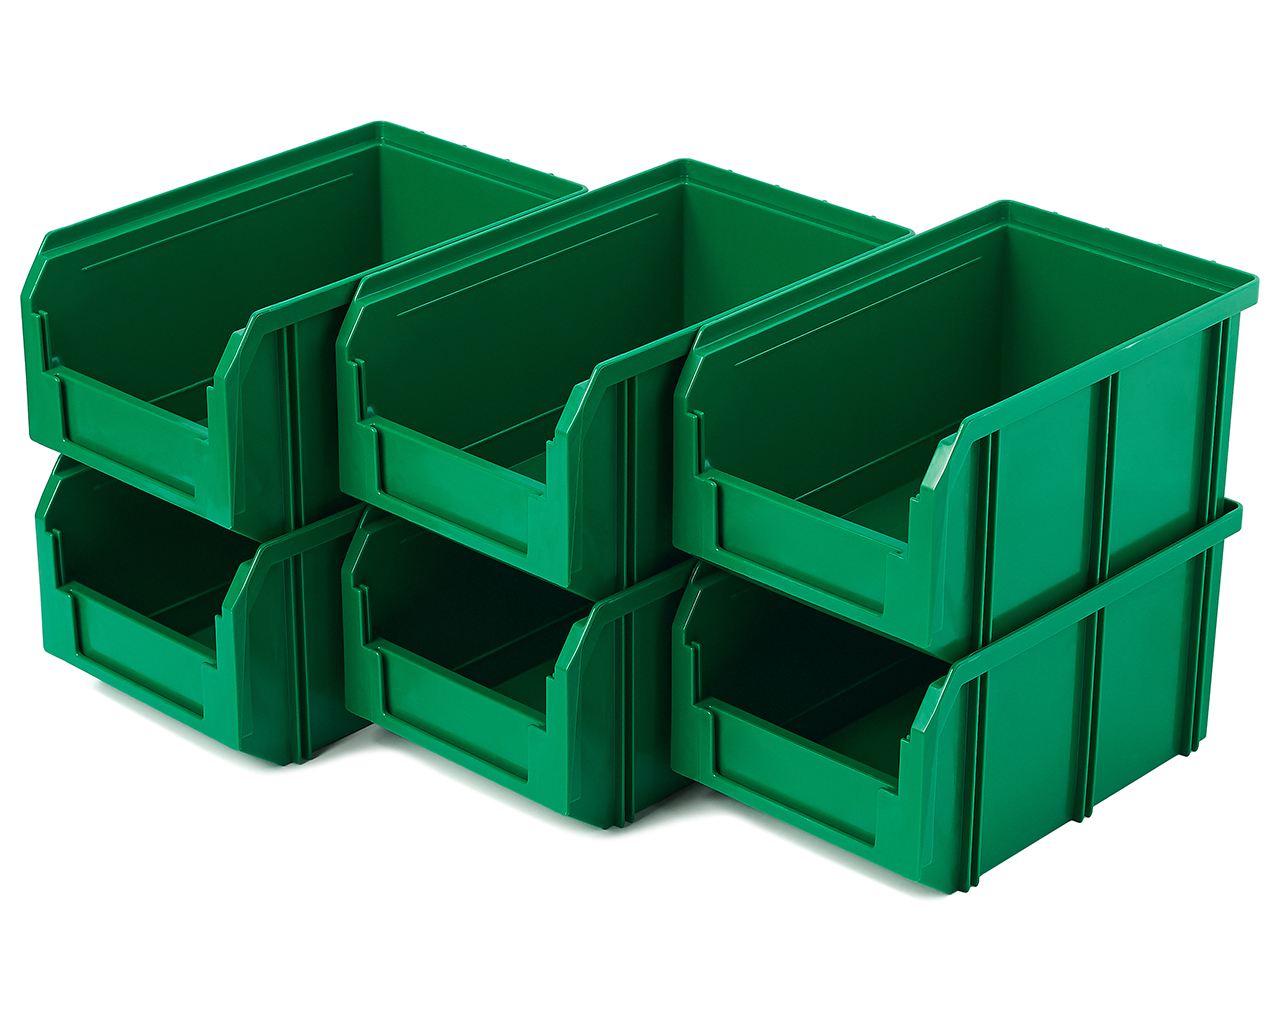 Пластиковый ящик Стелла-техник V-2-К6-зеленый, 234х149х121 мм, комплект 6 шт.